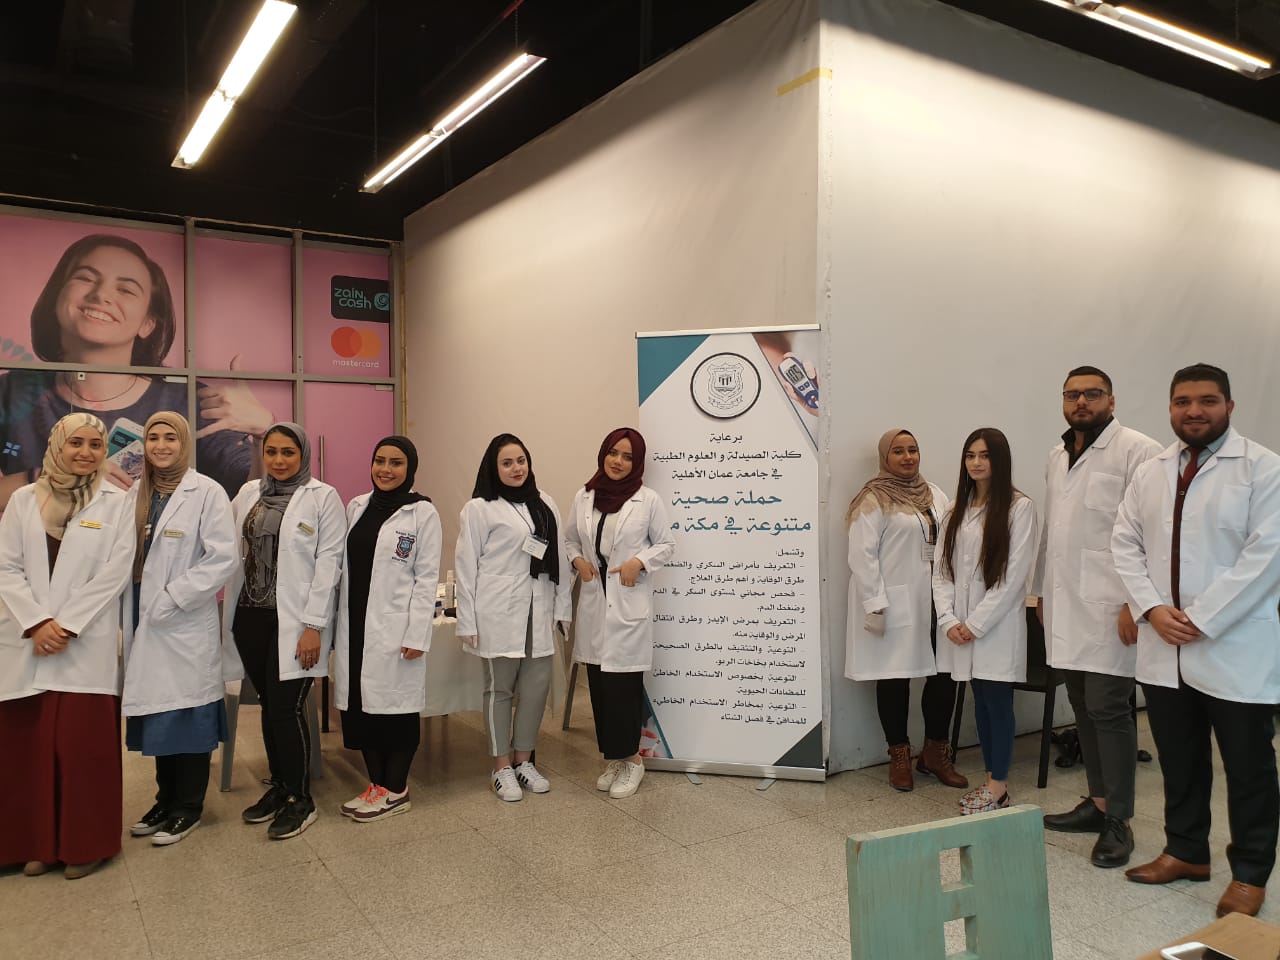 حملة توعوية صحية متنوعة في “مكة مول” لطلبة الصيدلة و العلوم الطبية من جامعة عمان الاهلية